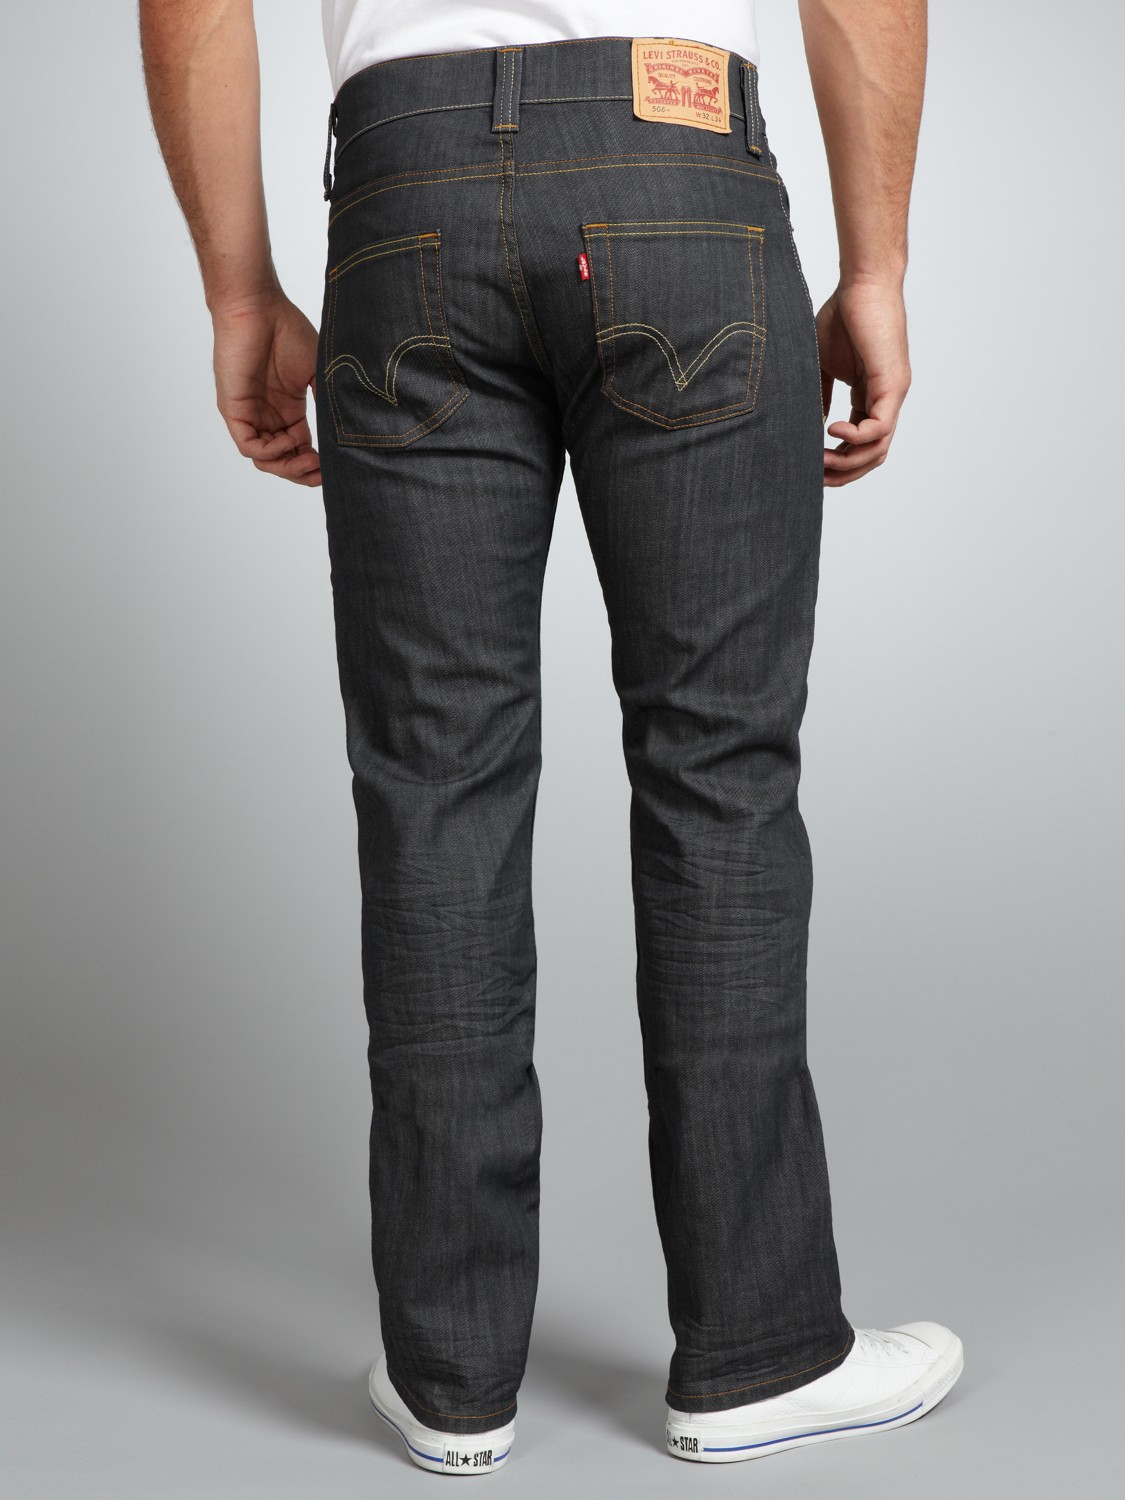 levis jeans 506 standard